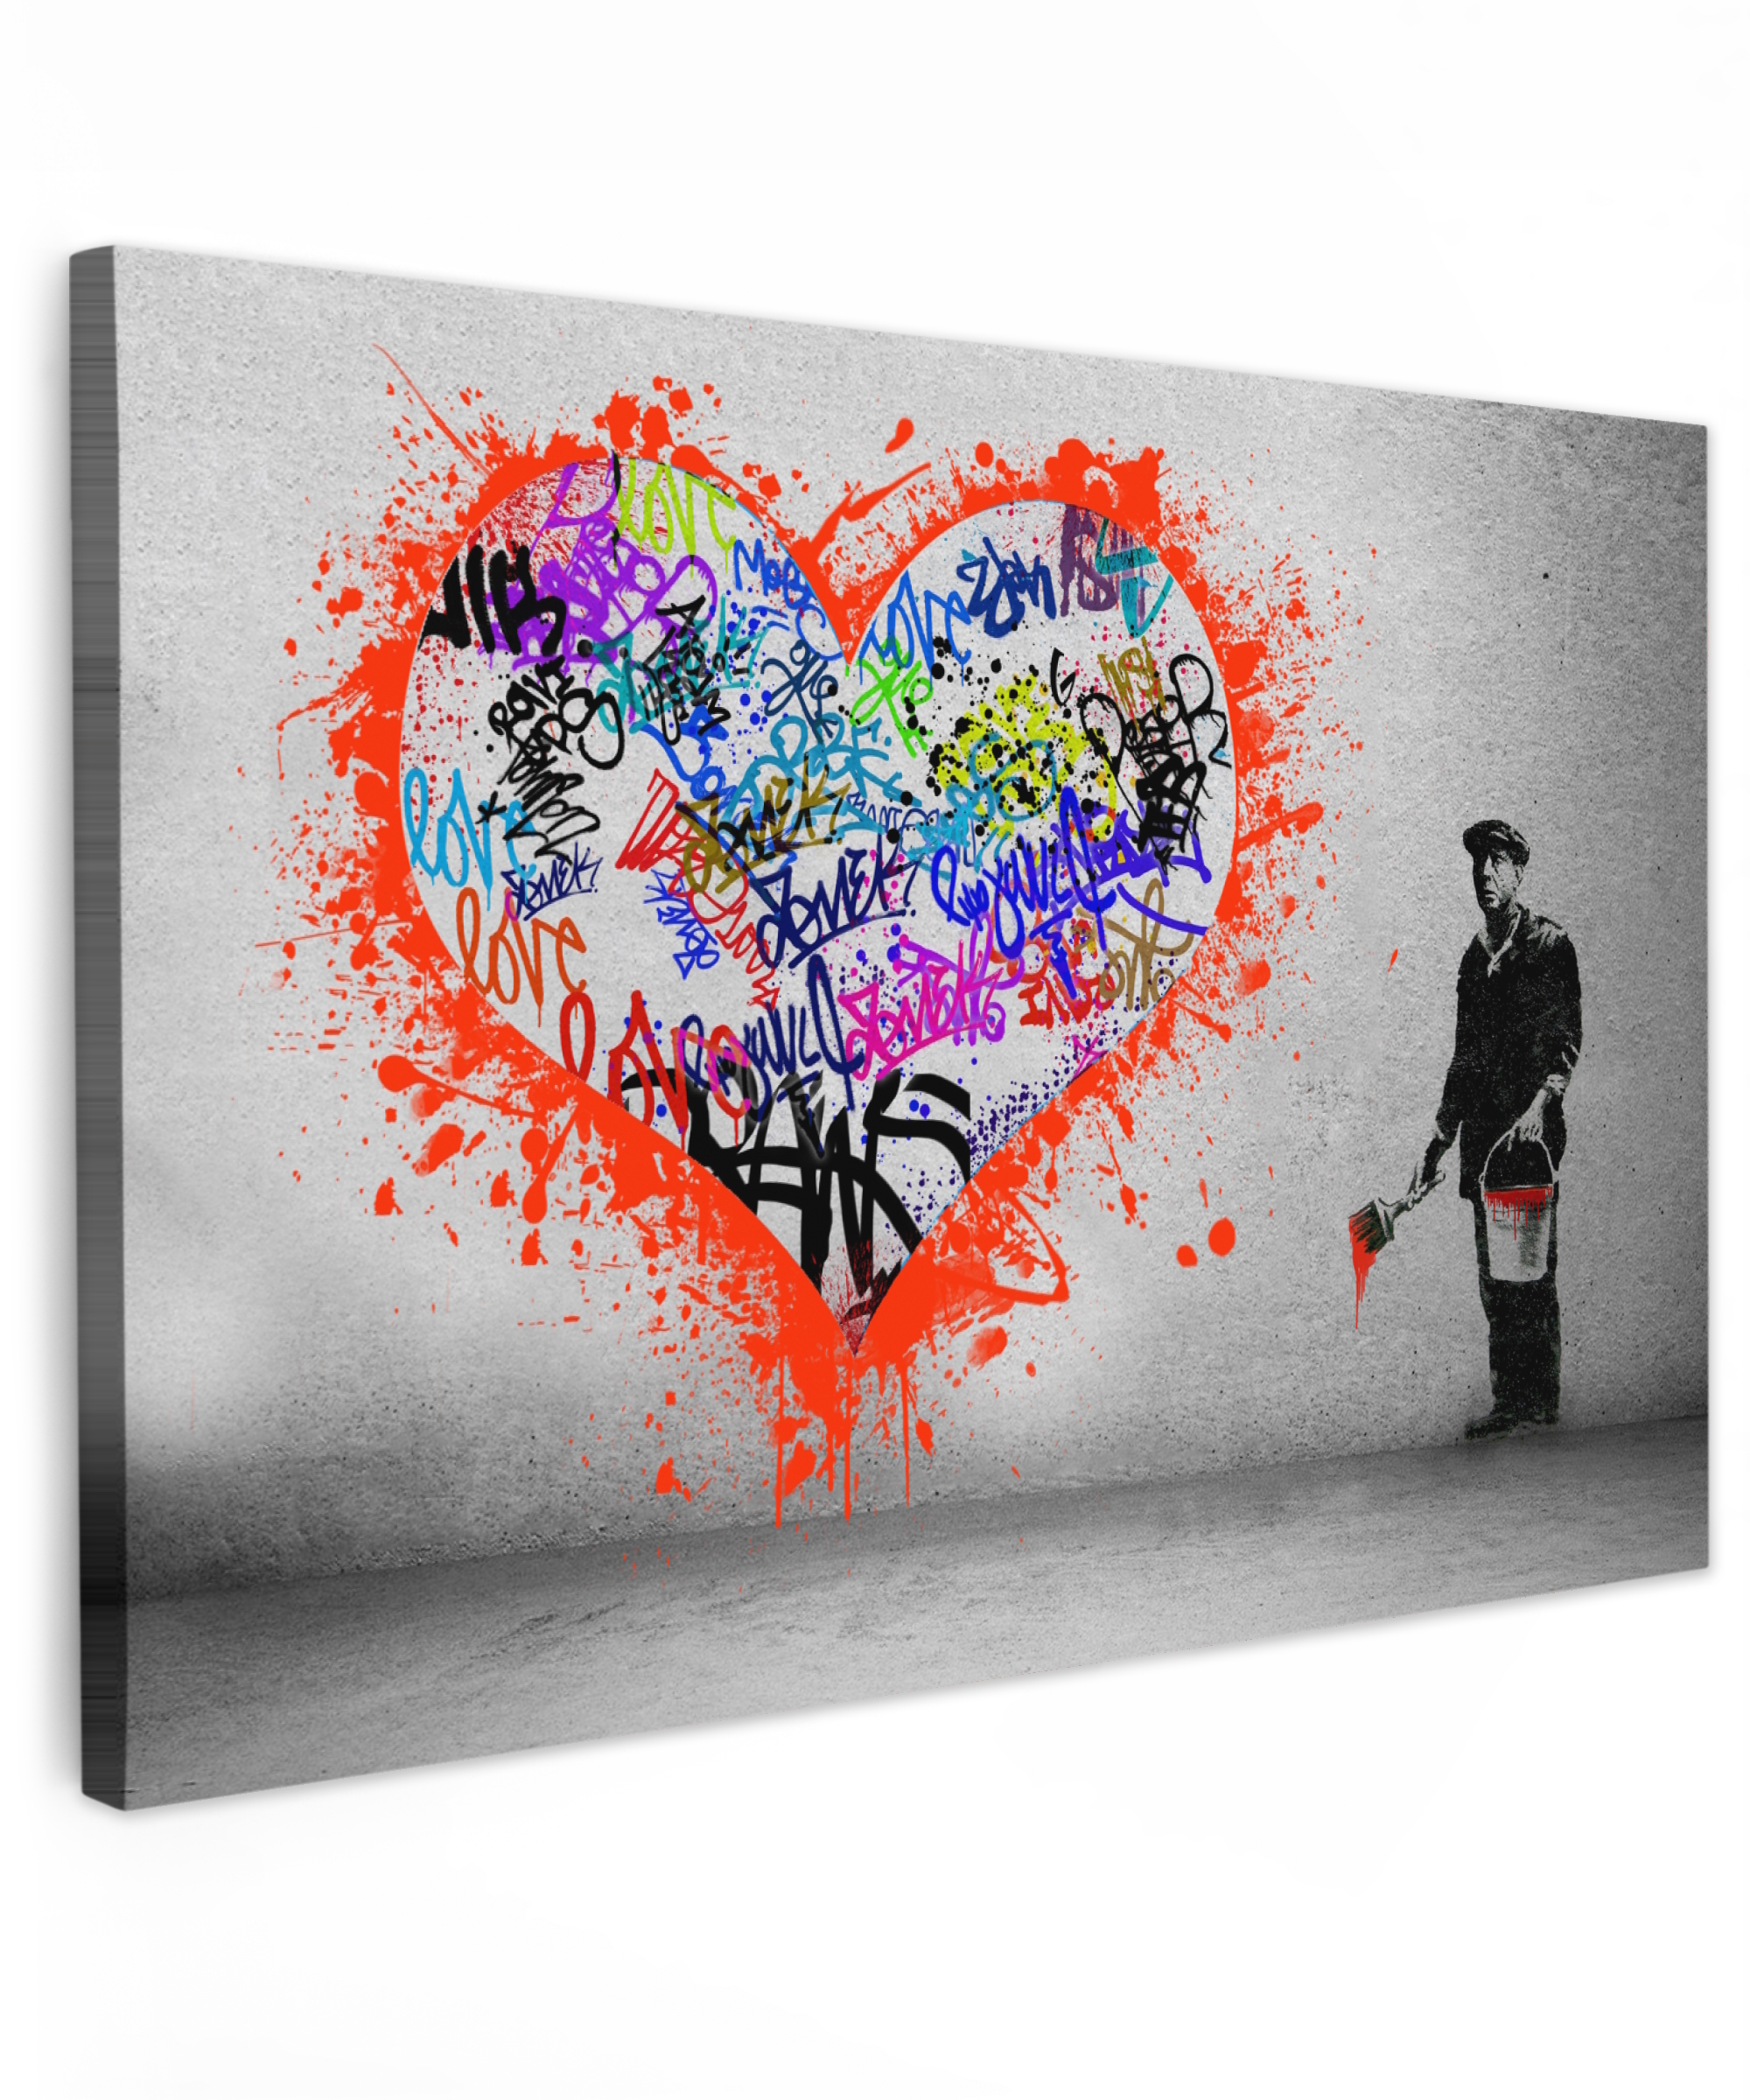 Canvas schilderij - Hart - Graffiti - Man - Regenboog